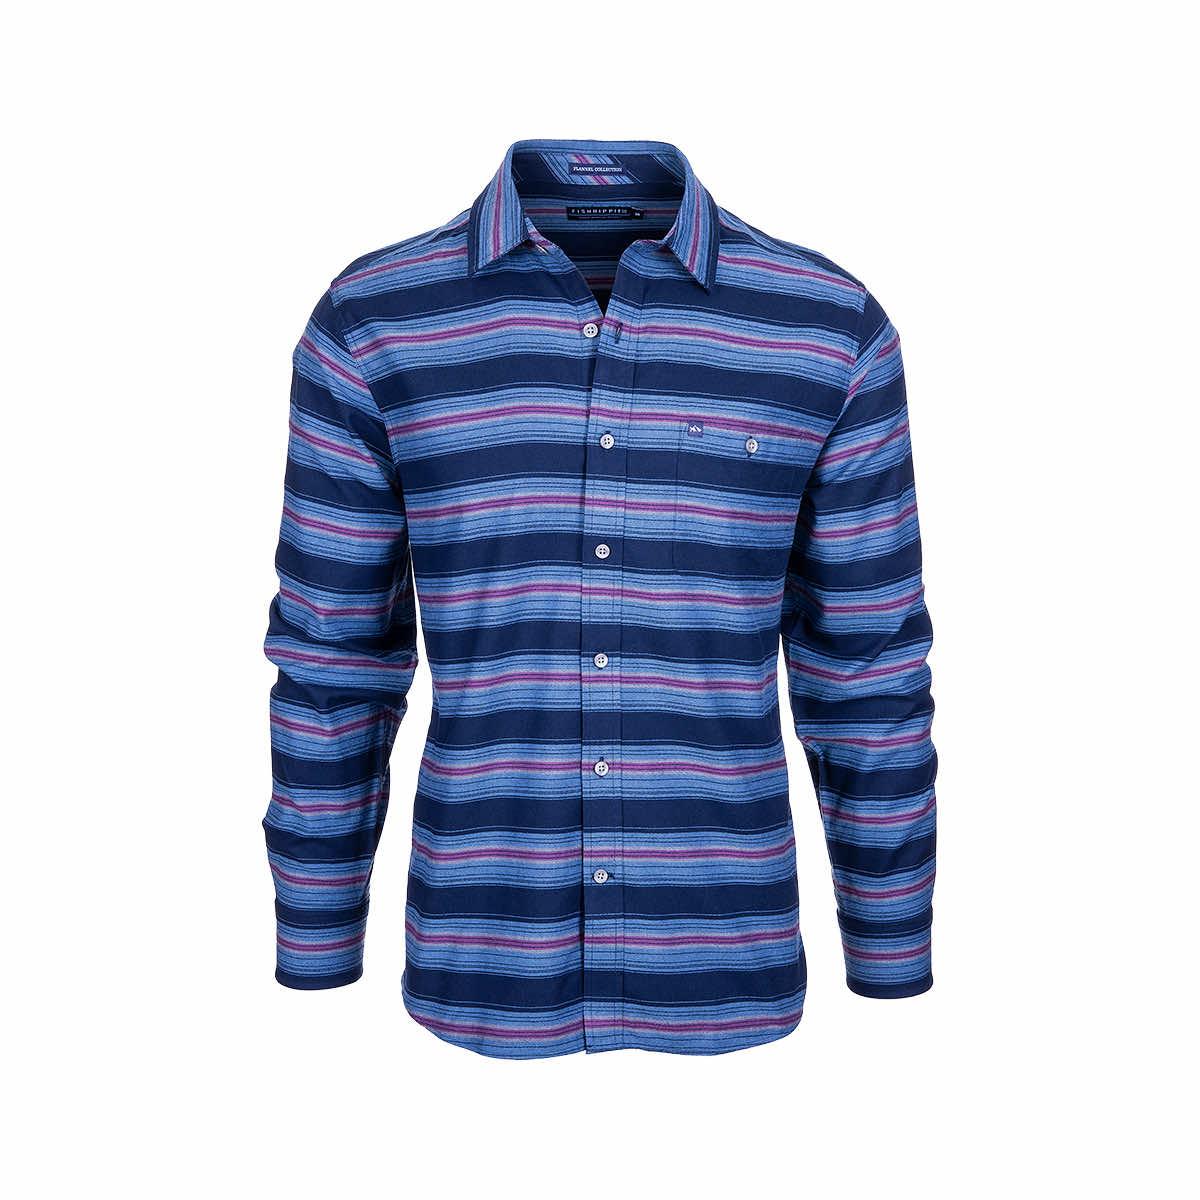  Men's Bypass Flannel Shirt